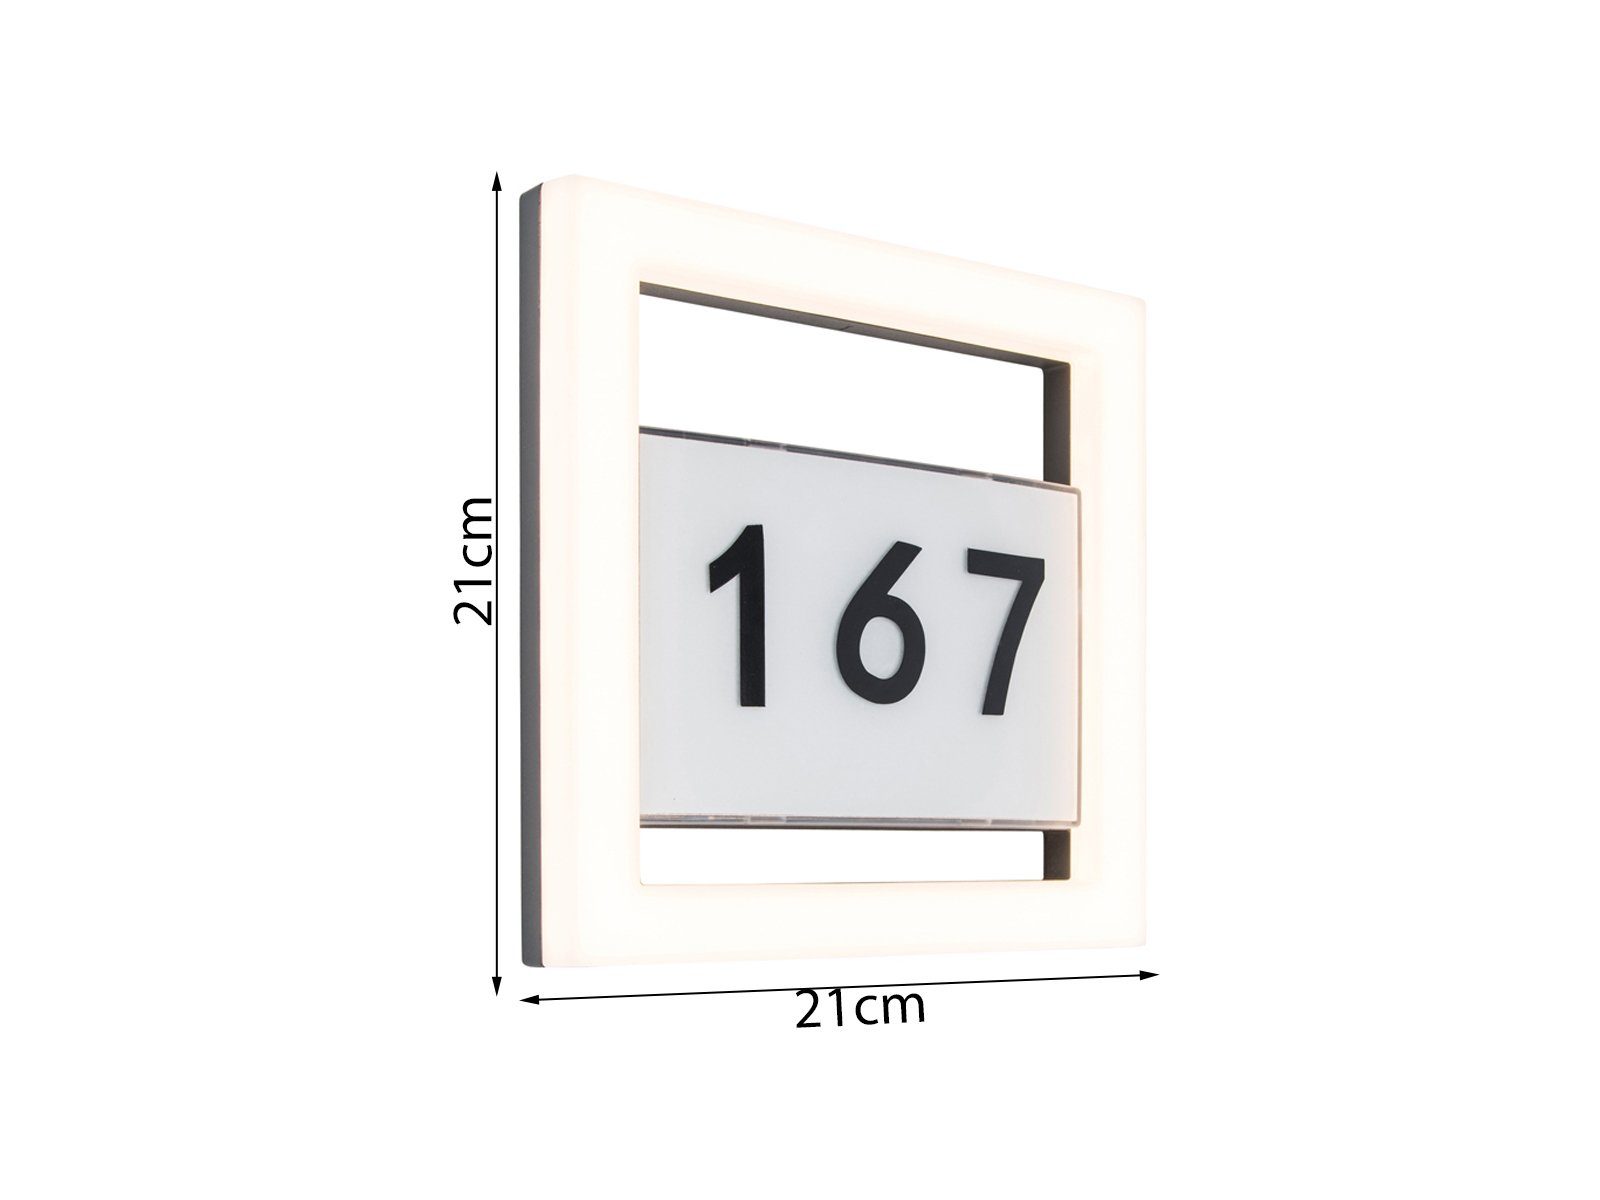 H: warmweiß, 21cm 2-er LED Hausnummernbeleuchtung beleuchtet LED Außen-Wandleuchte, Hausnummer LUTEC Hauswand fest Set integriert,